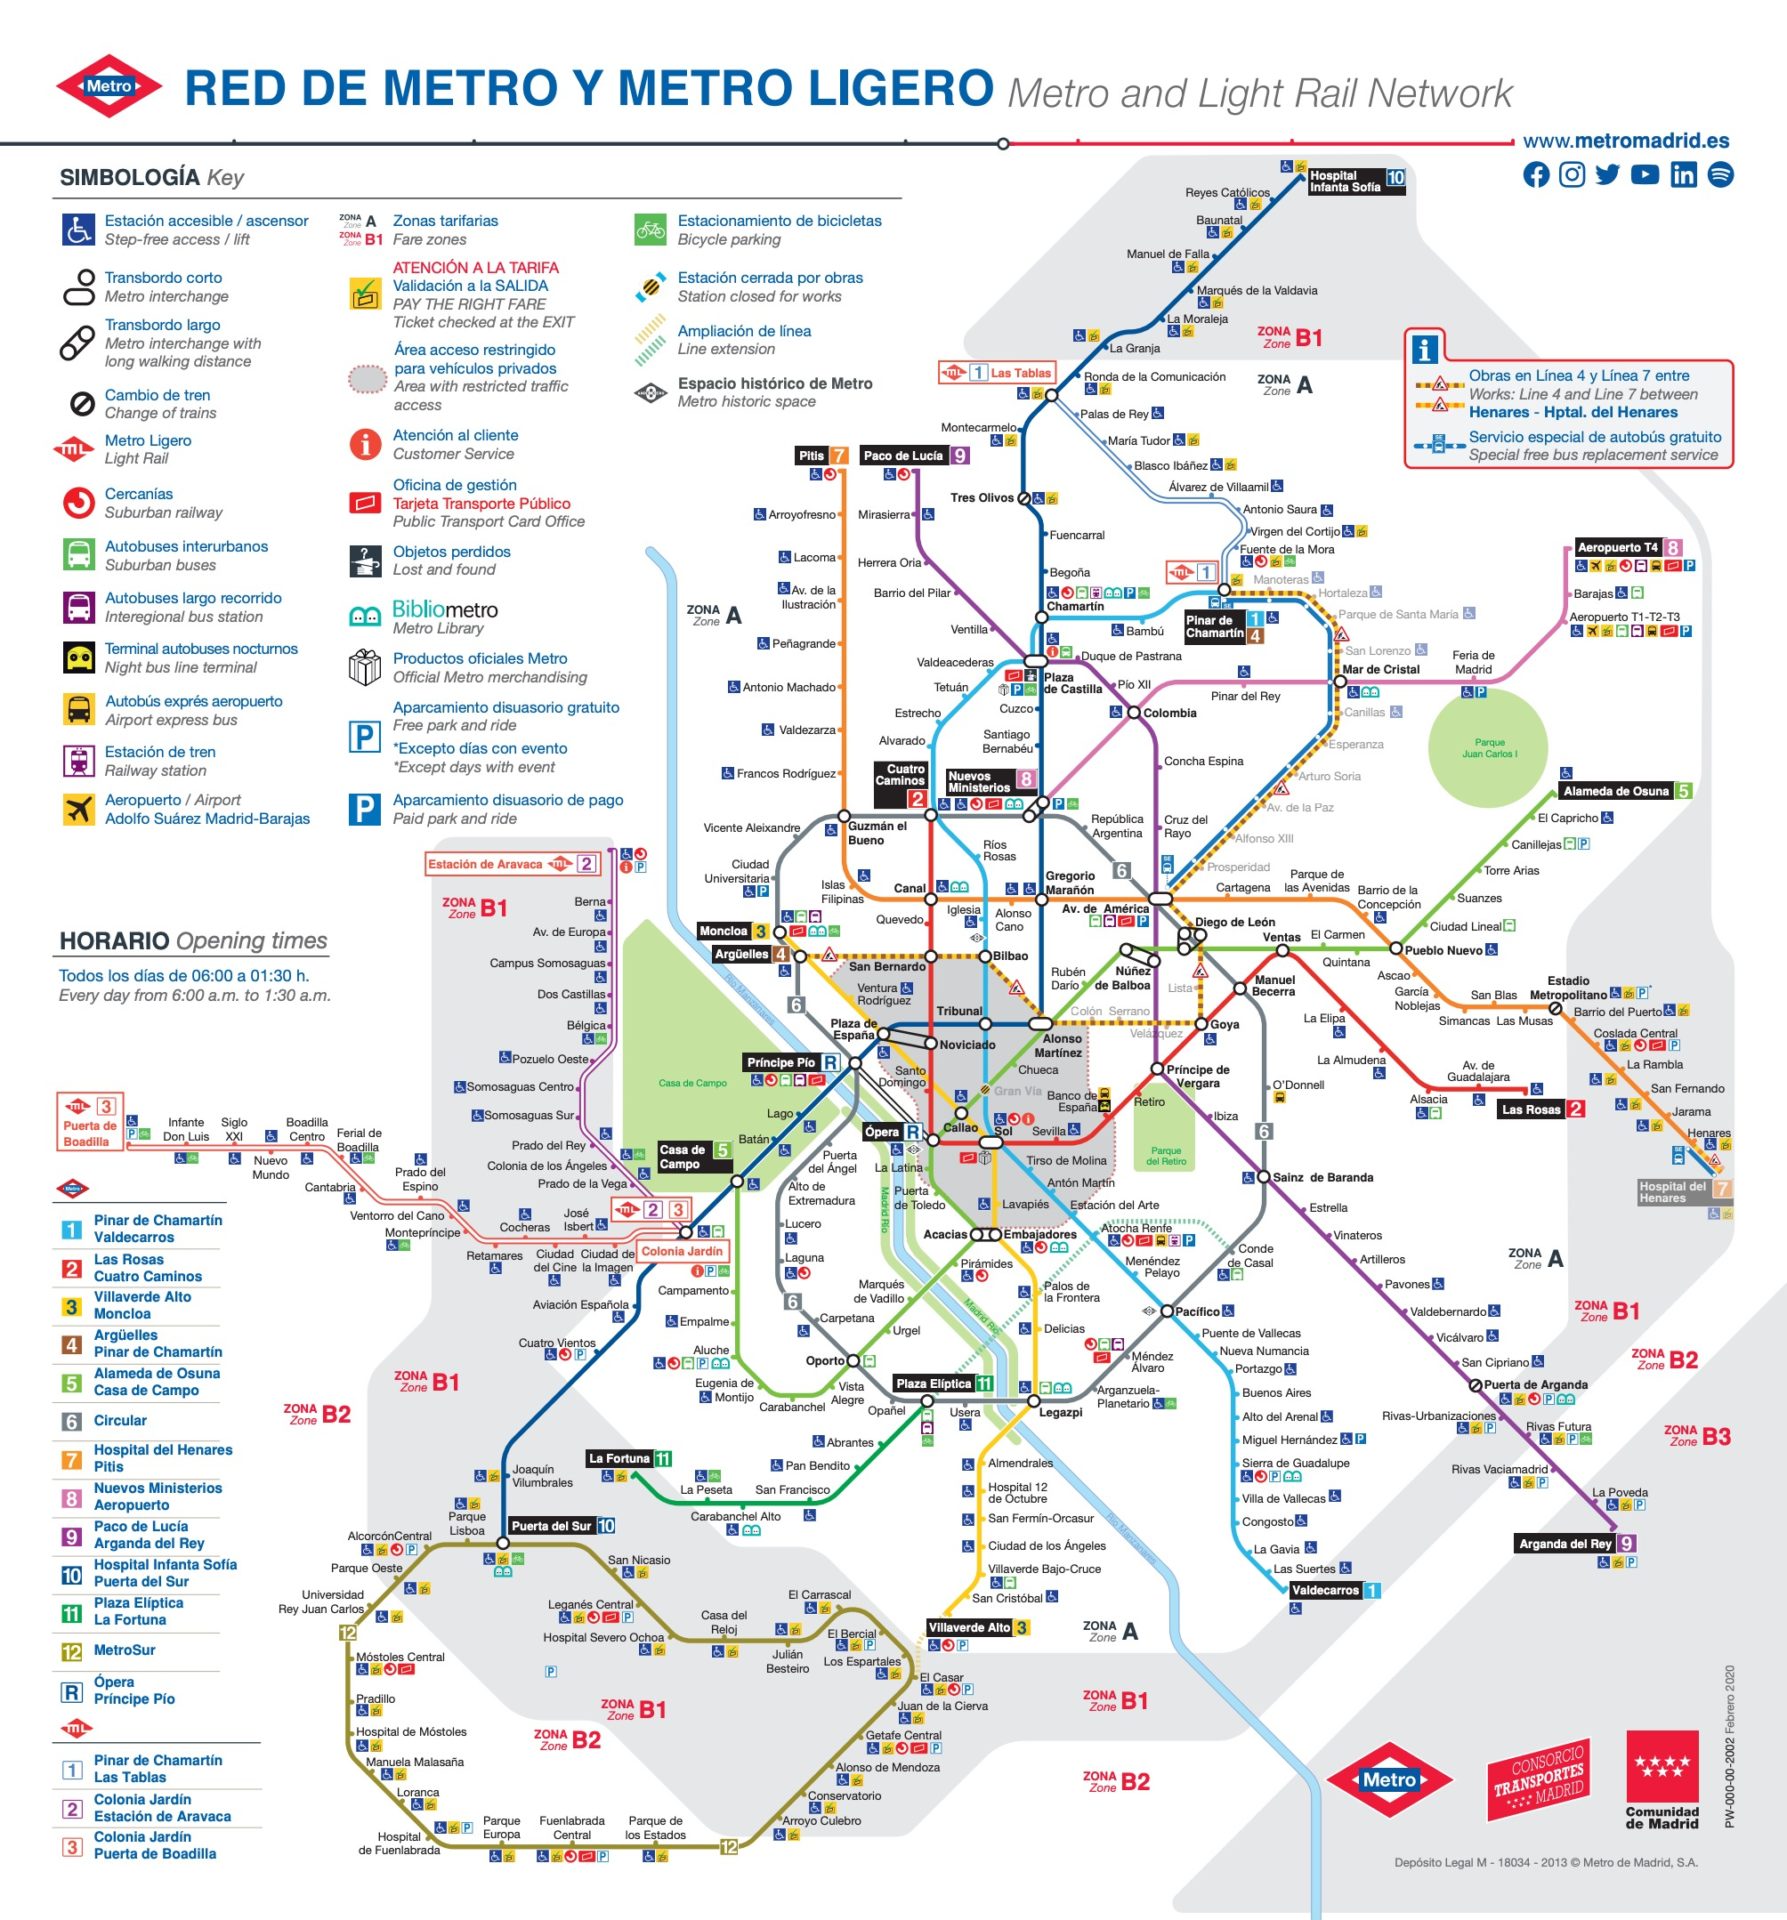 マドリードの地下鉄路線図